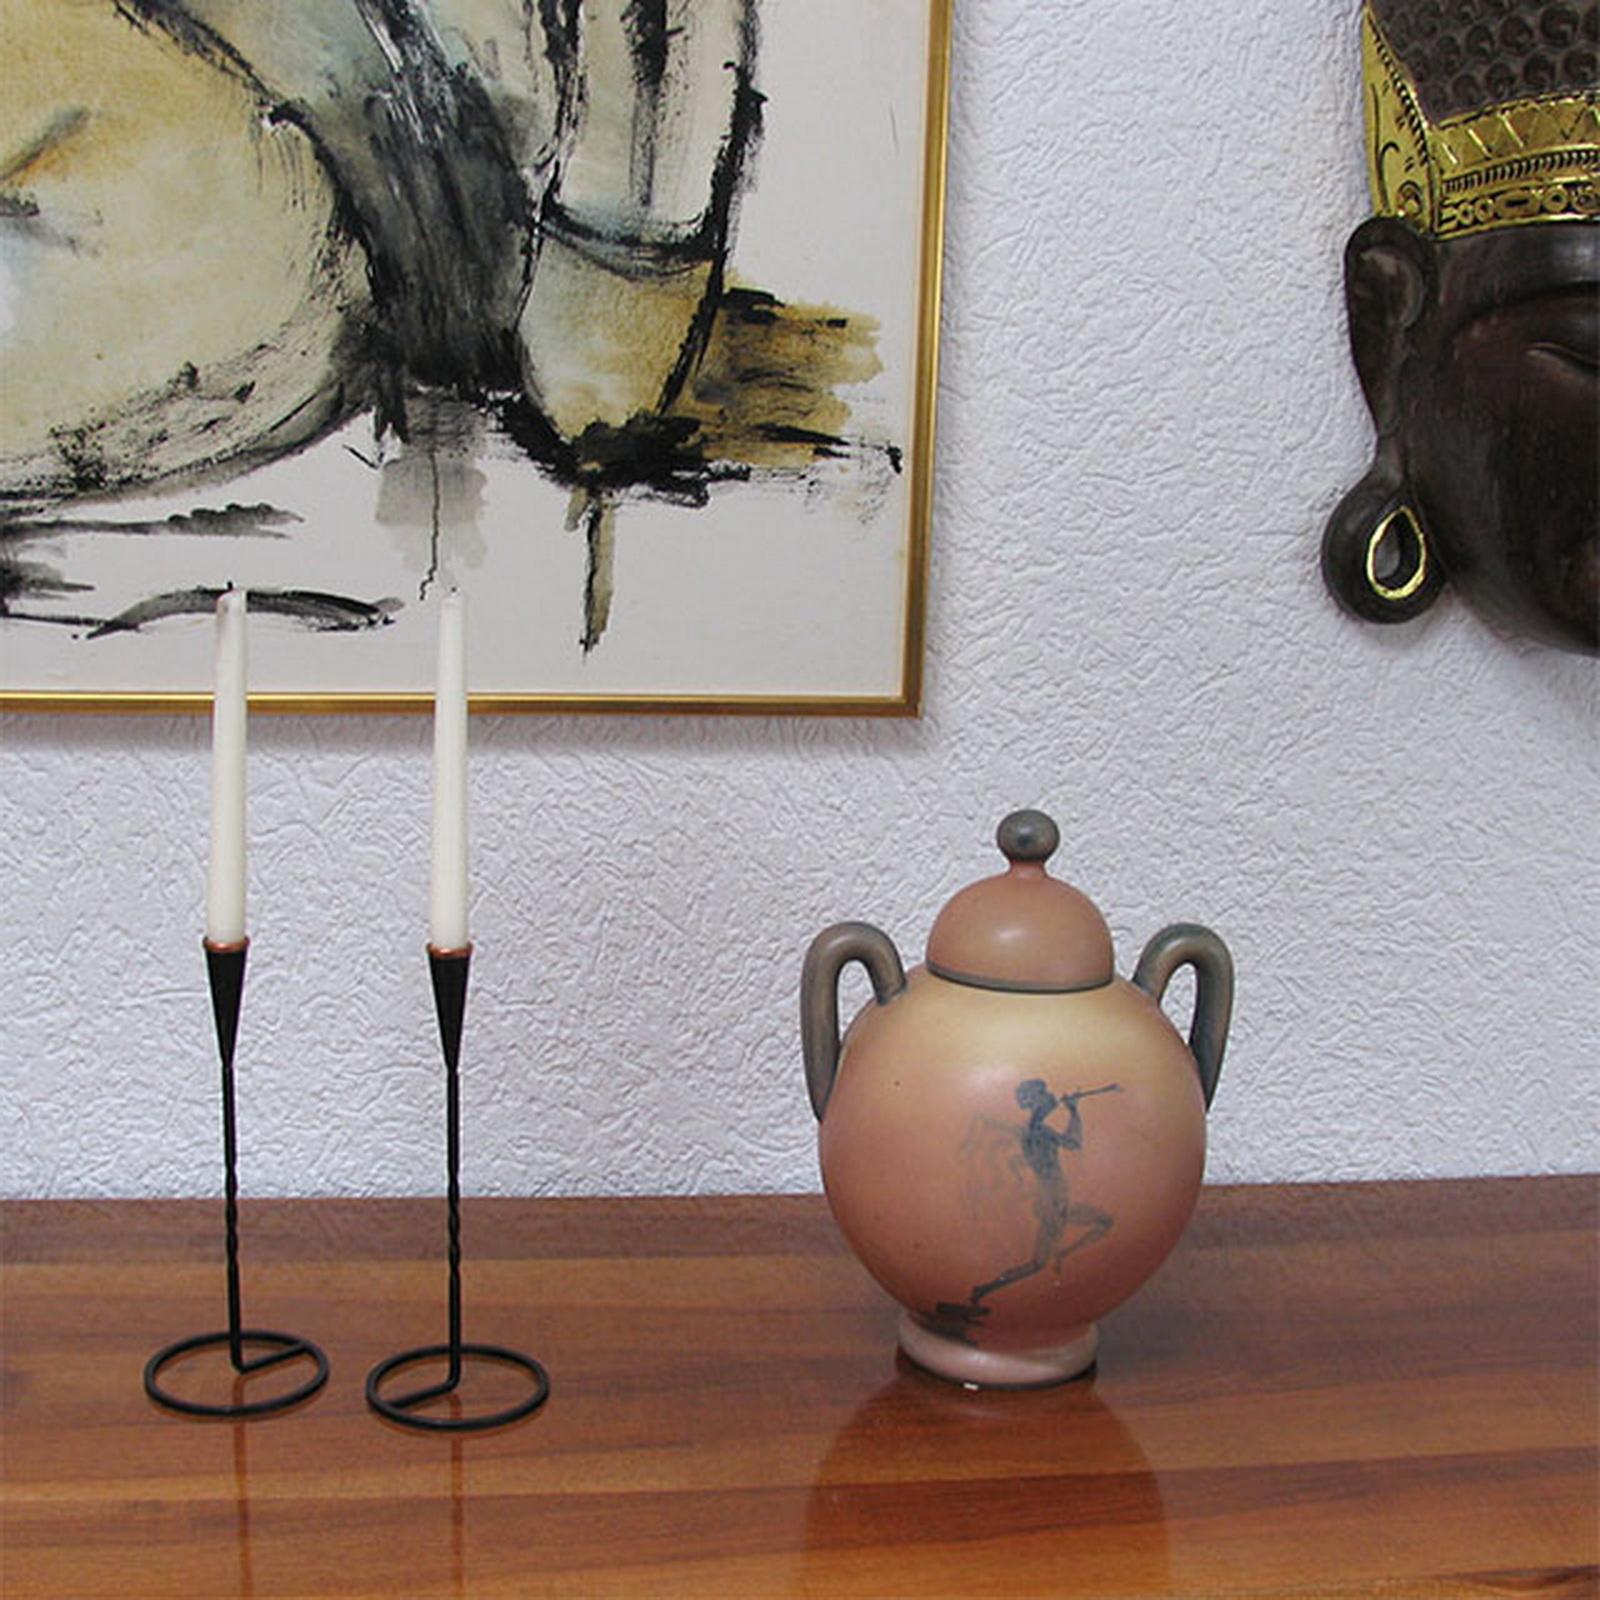 Schwedische Keramikurne im Art-Deco-Stil mit Deckel von Åke Holm für Höganäs.
Vorderseite mit einer geflügelten Figur, die eine Trompete spielt, die andere Seite mit einer Blume verziert. Der Deckel hat einen kugelförmigen Knauf. 
In sehr gutem